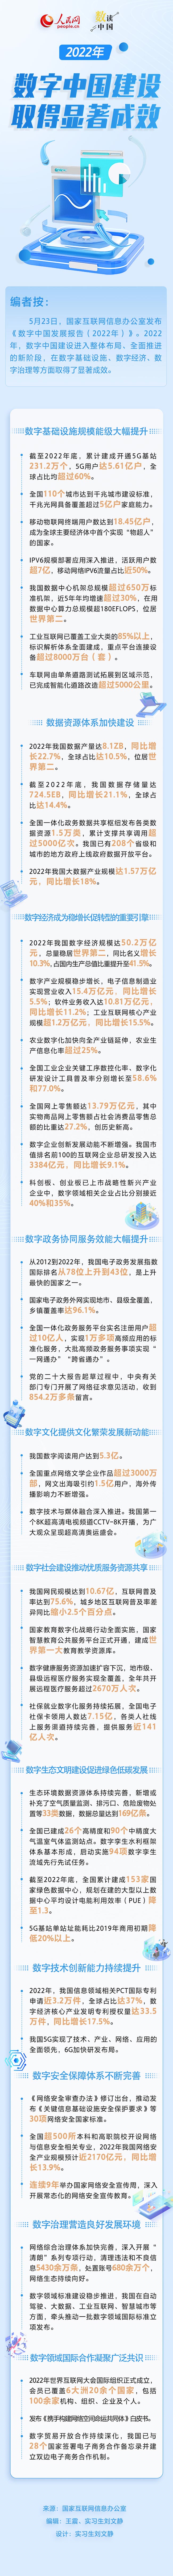 数读中国 | 2022年数字中国建设取得显著成效